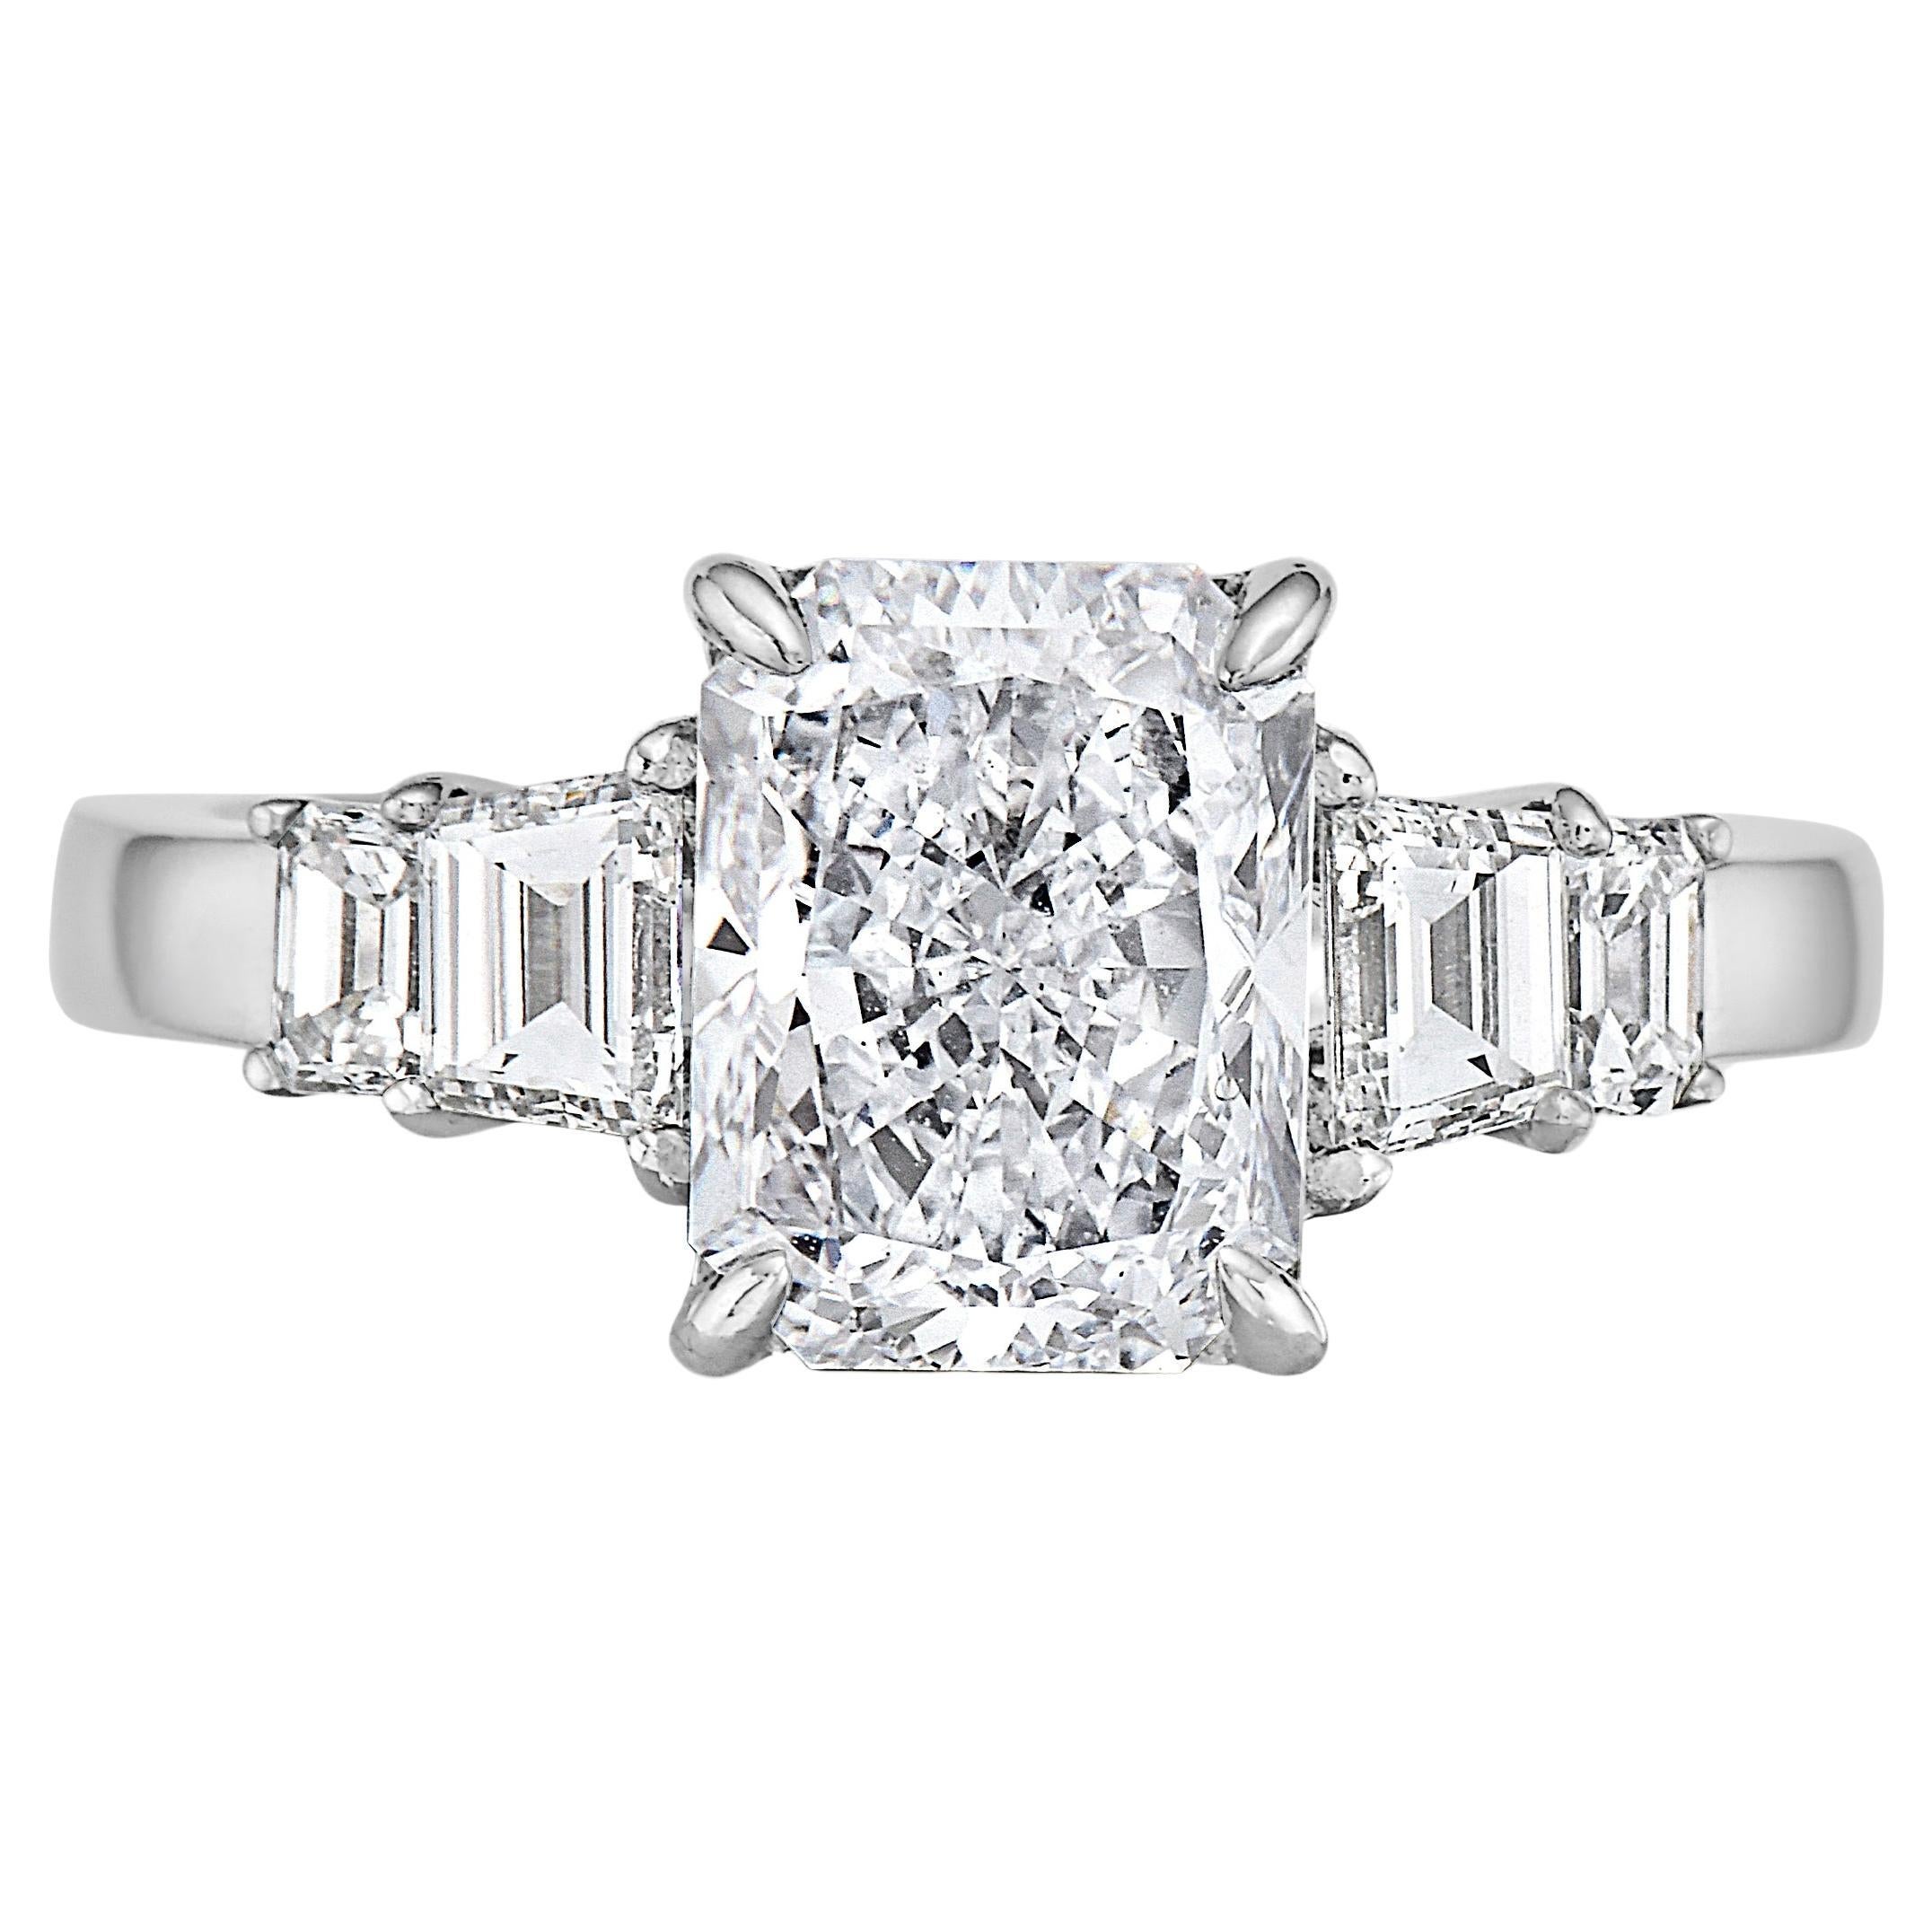 E Diamond Cut VVS1 And White Diamond 18k White Gold Ring - GIA: 6204562589 For Sale